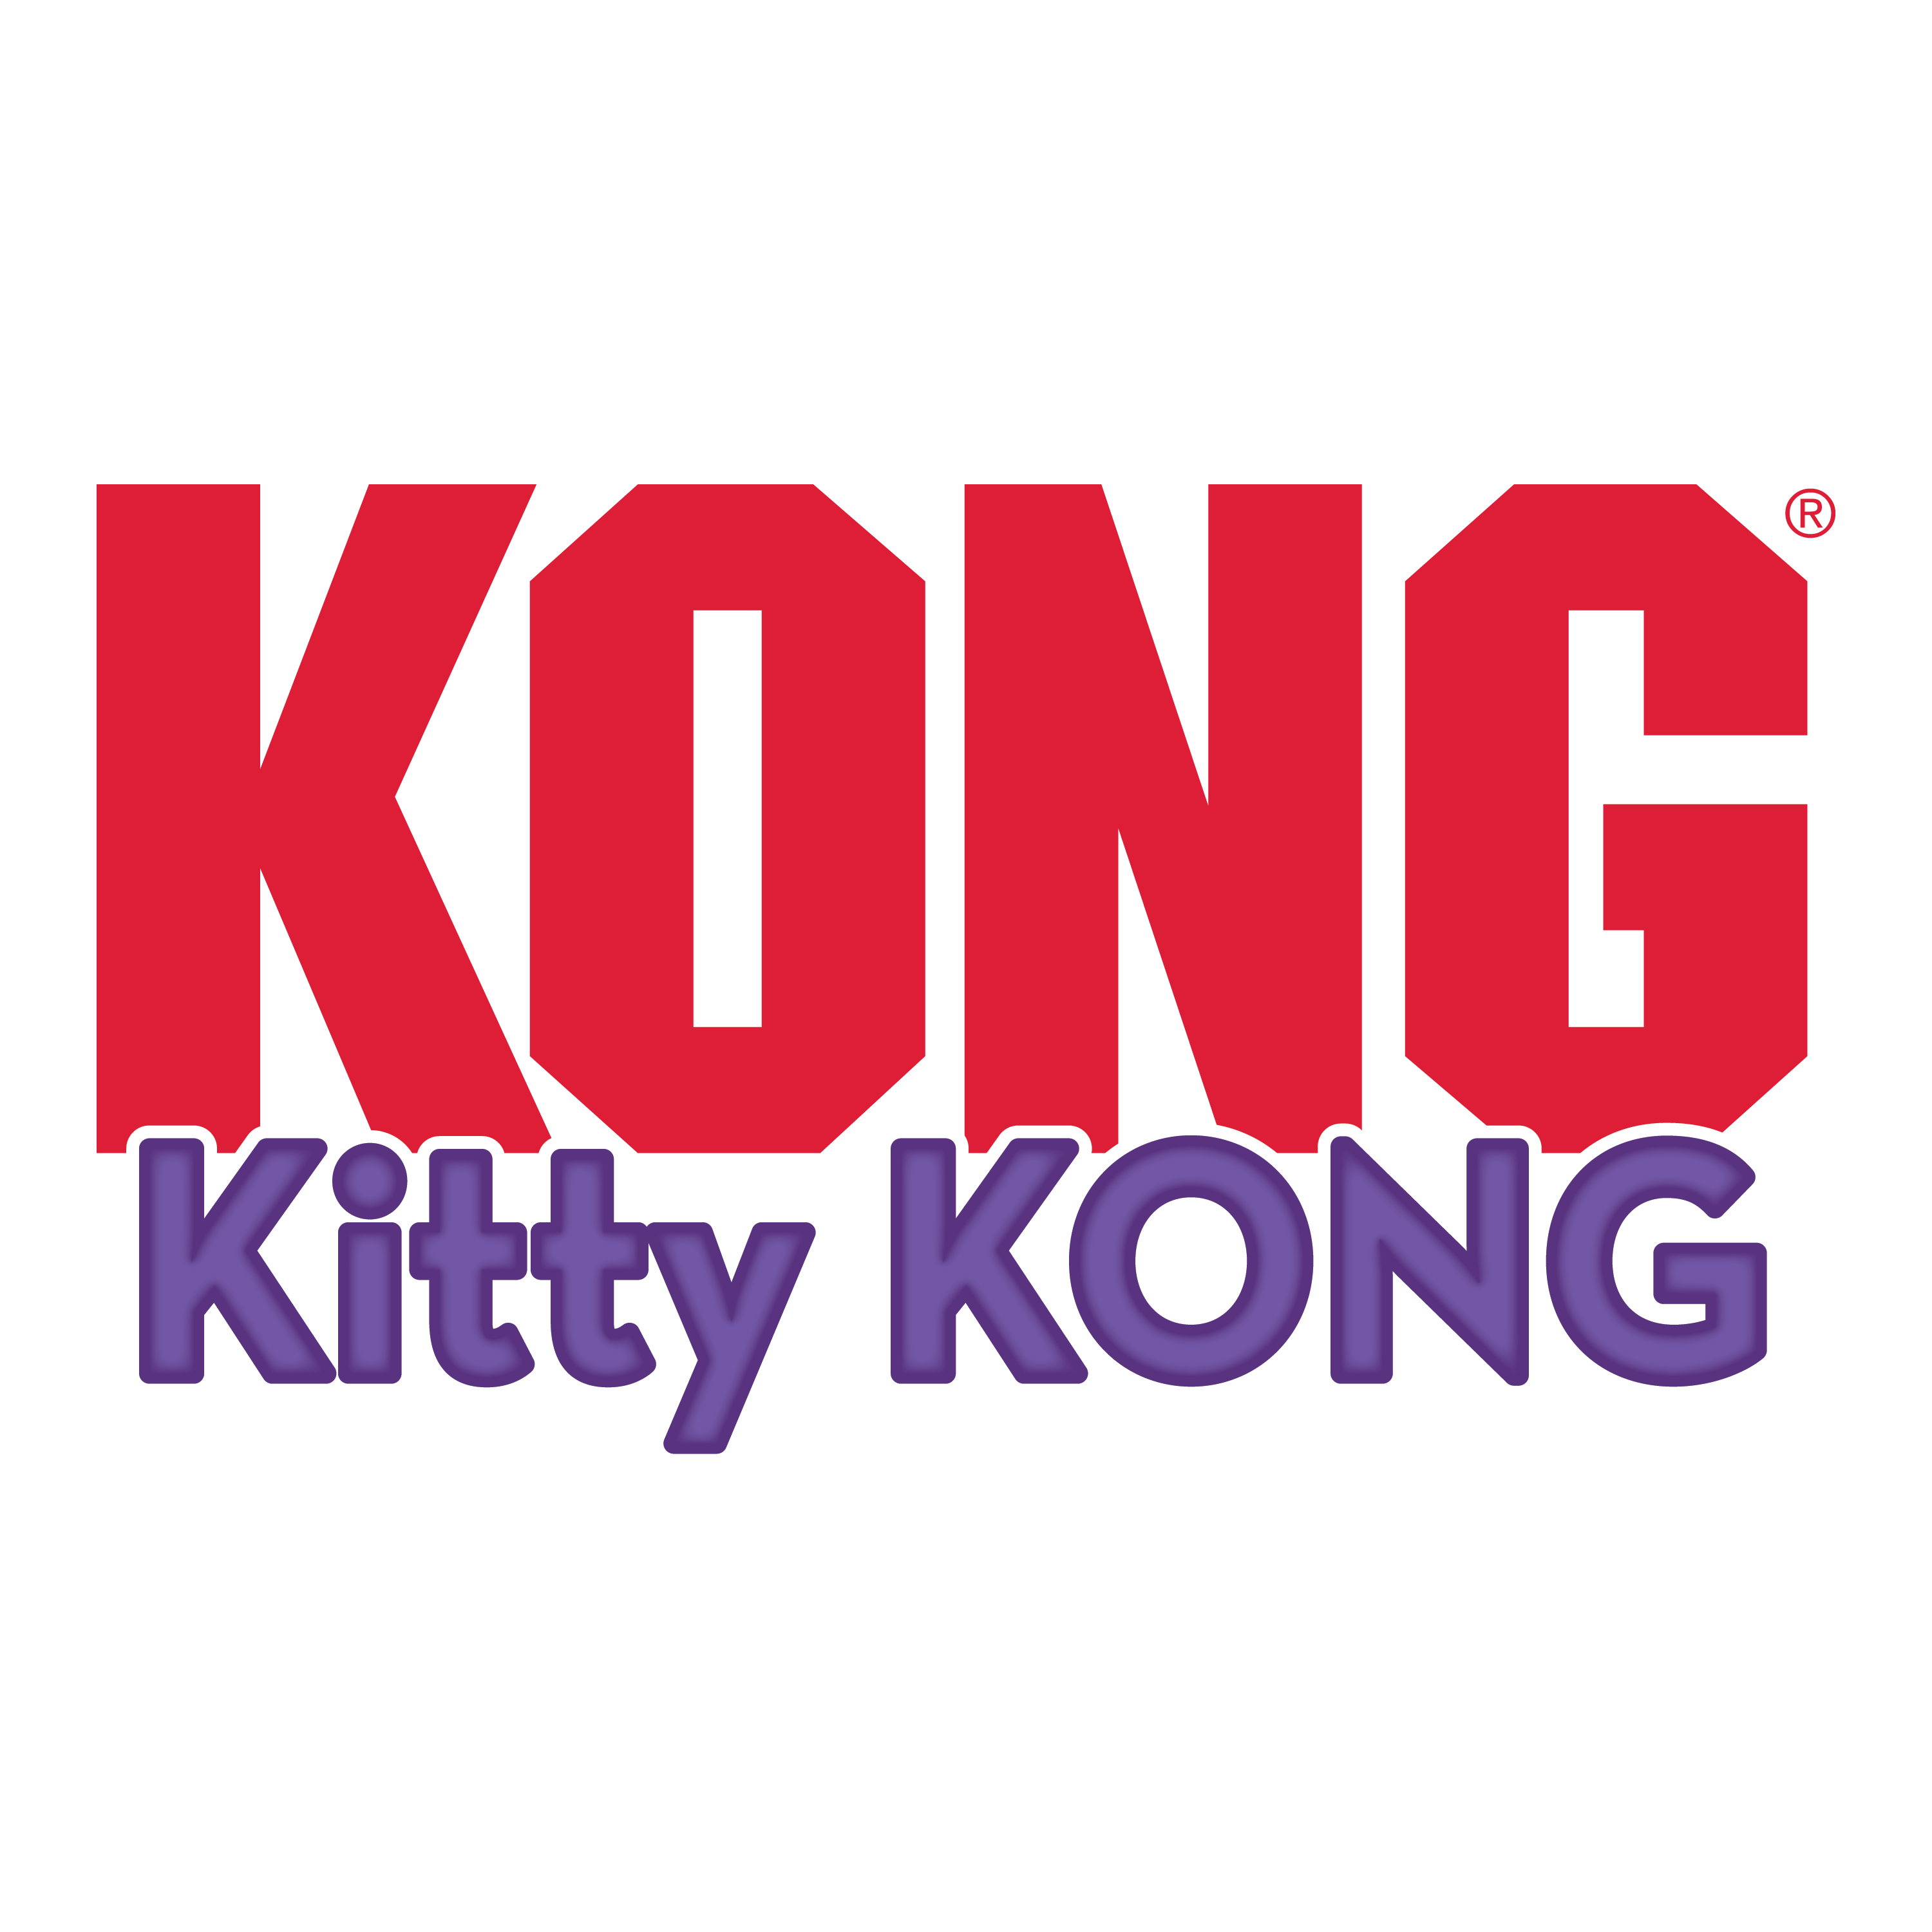 Kitty KONG alt1 imagem do produto